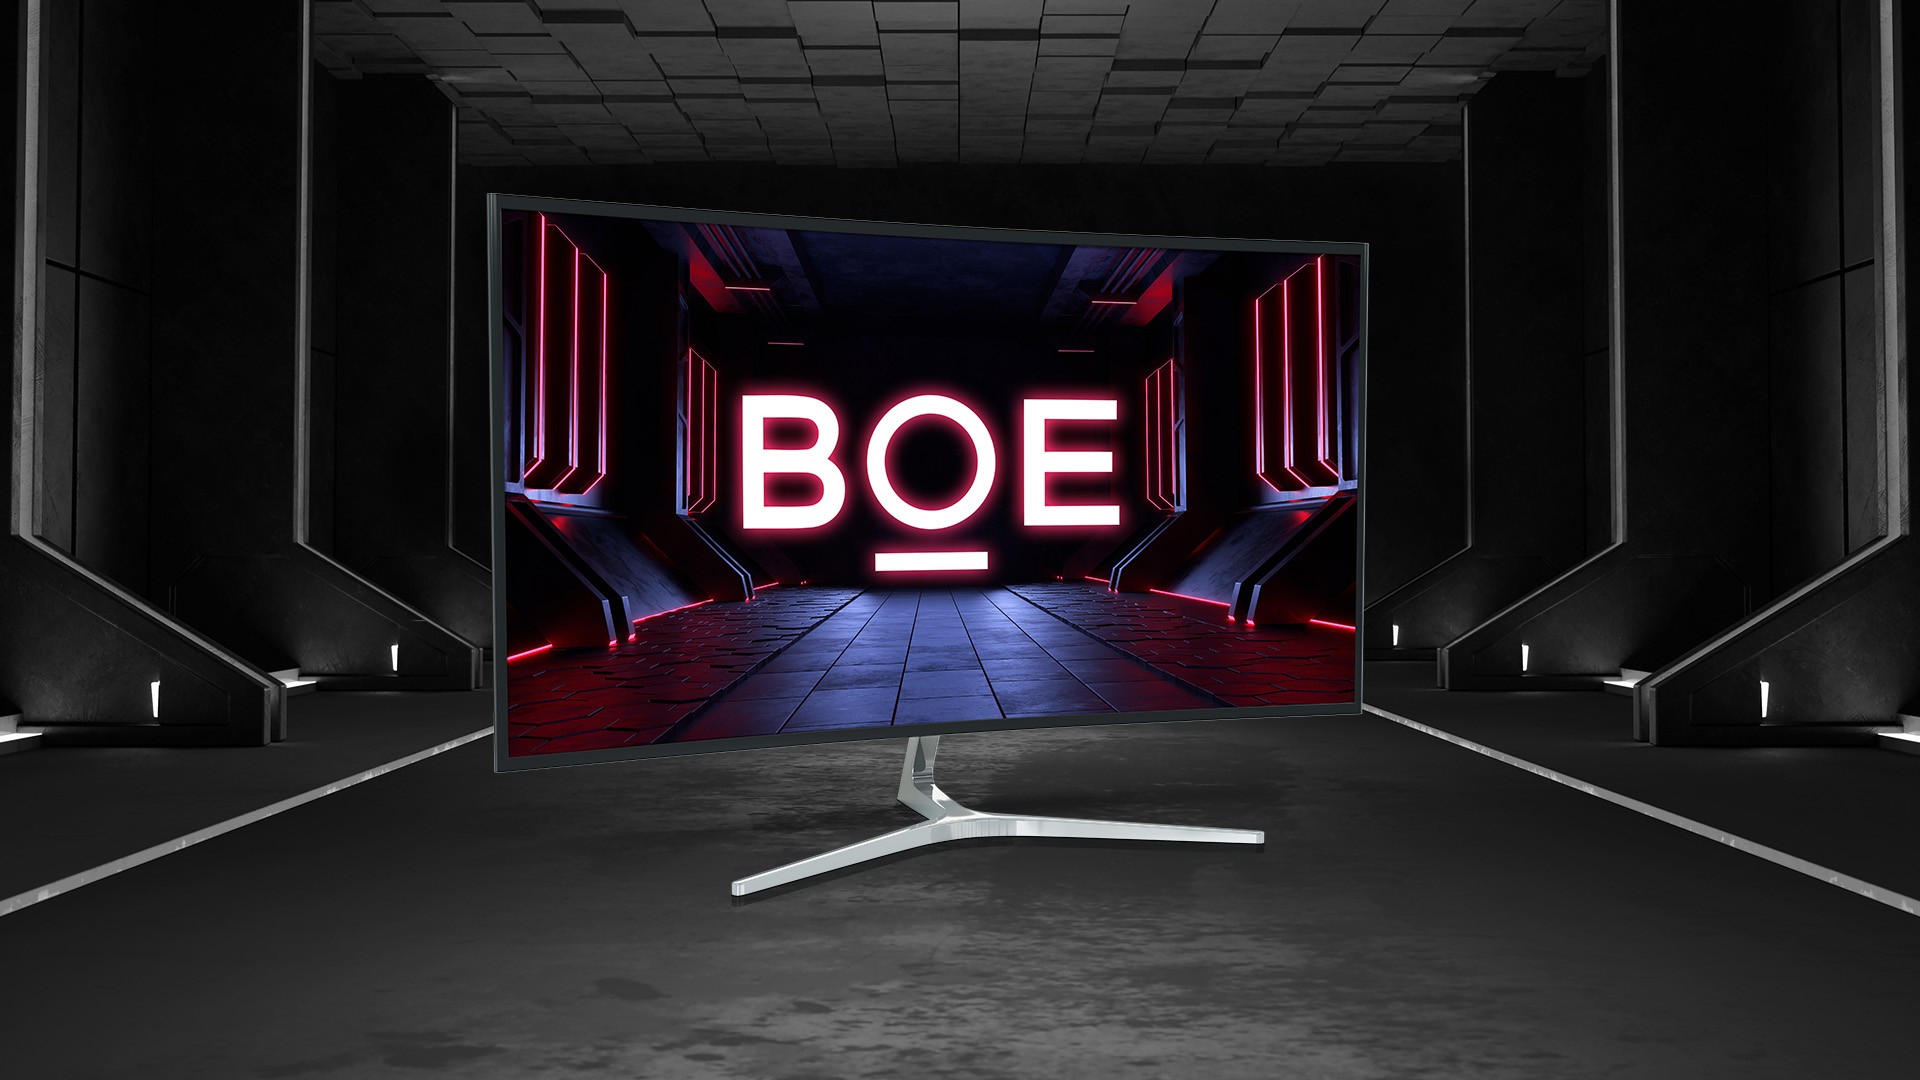 BOE revela o primeiro monitor do mundo com taxa de atualizao de 500 Hz